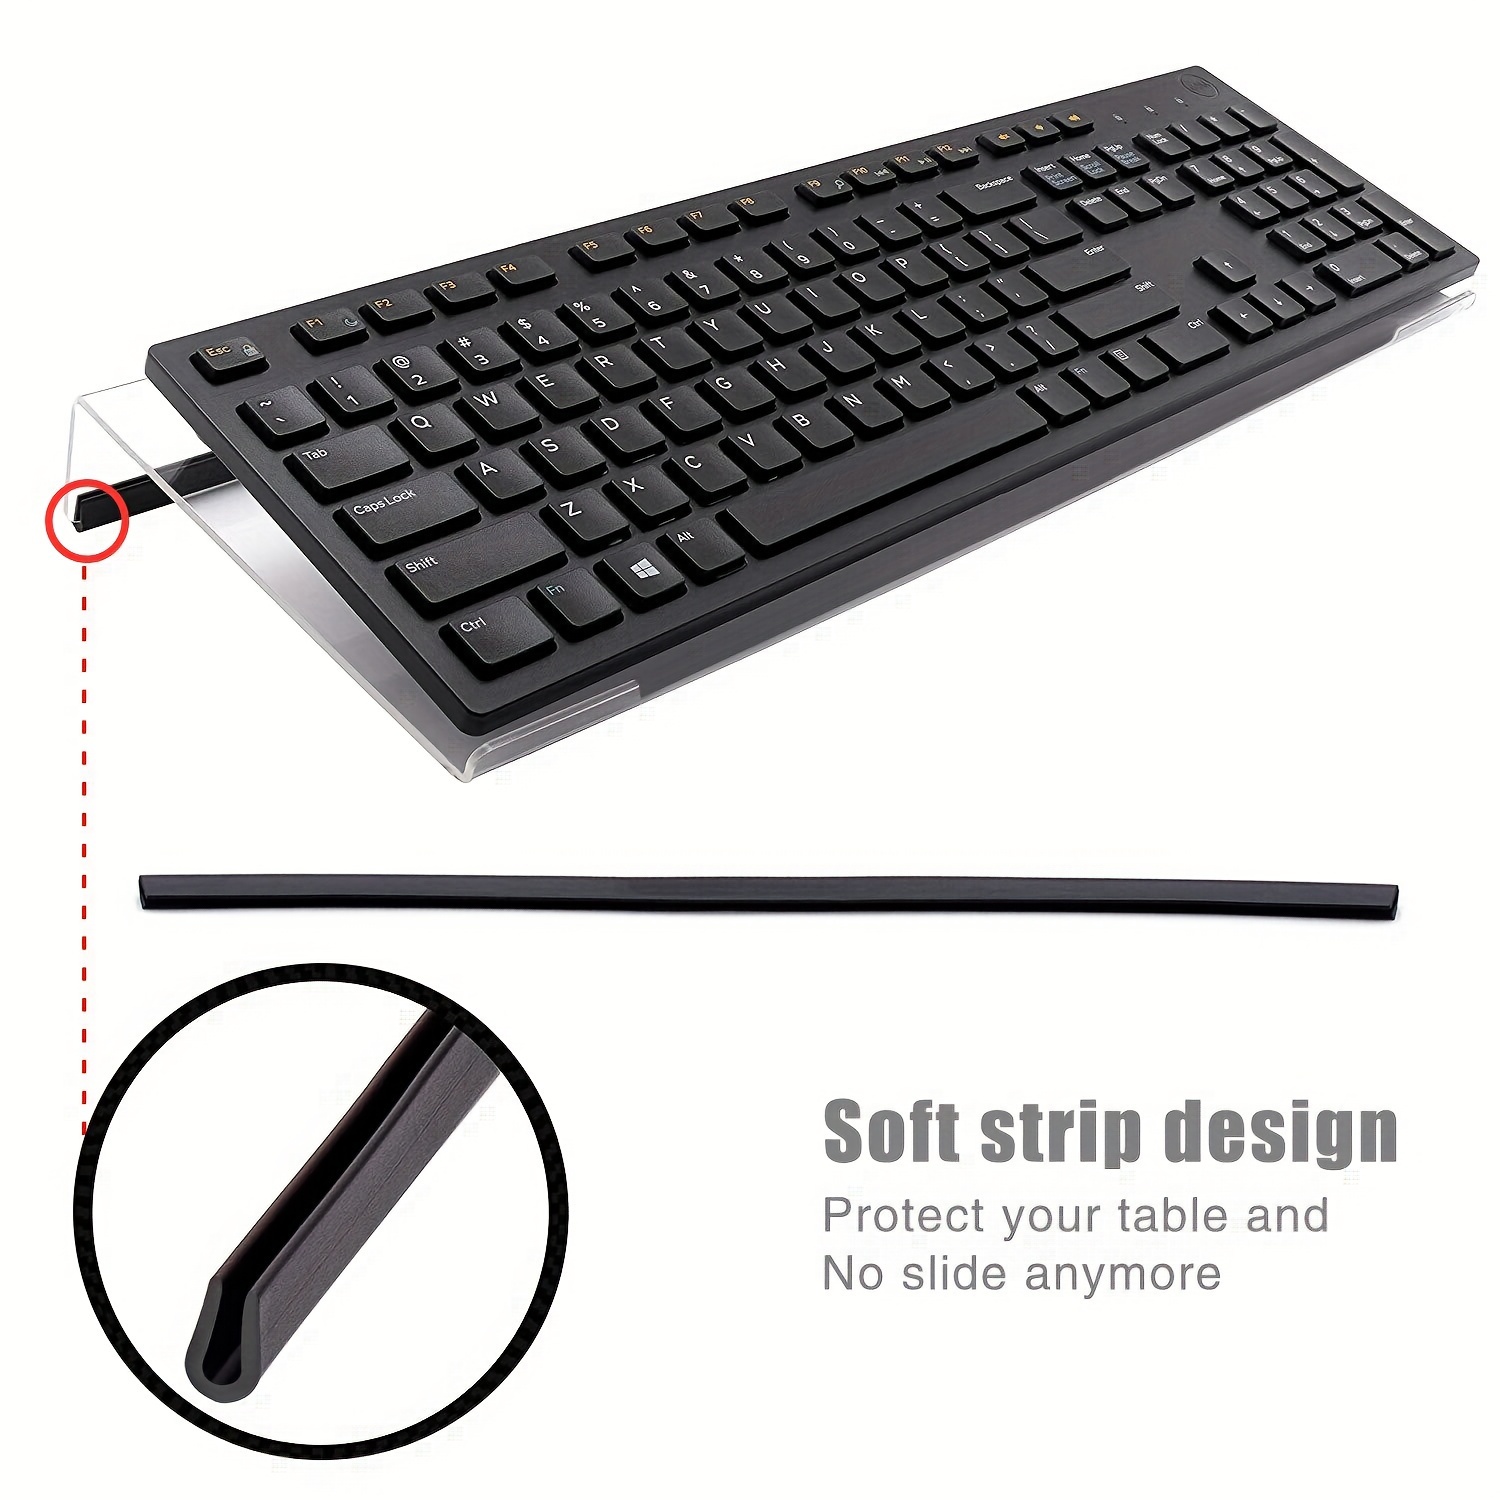 Support clavier pour le stockage angle plus élevé réduit lespace